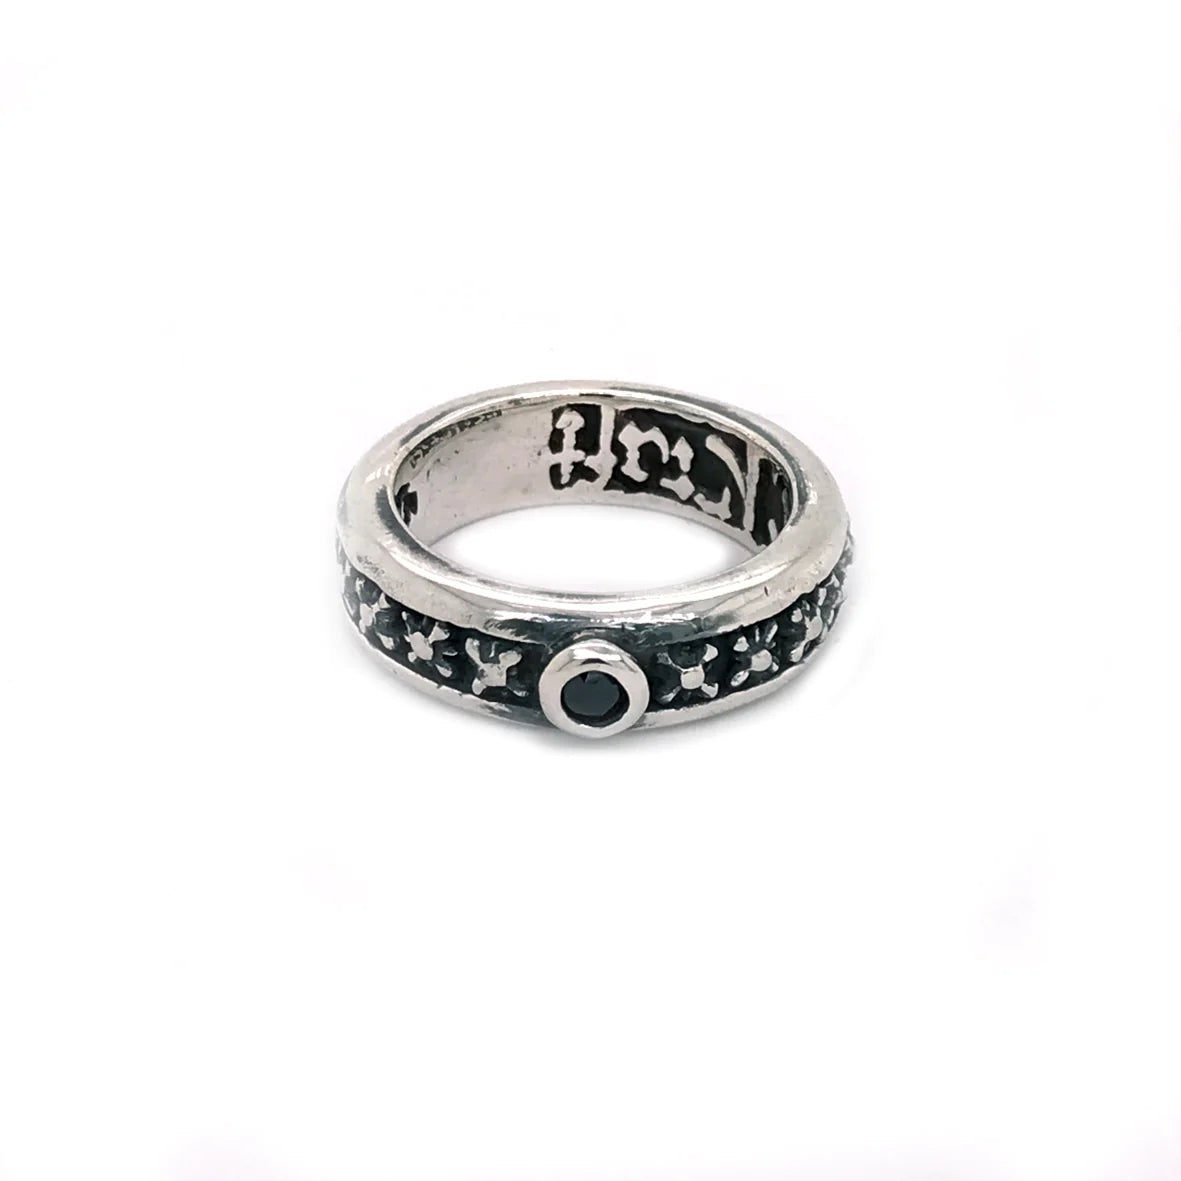 Silberner Ring von Elf Craft mit Miniatur Morgensternen und einem eingefassten schwarzen Zirkonia-Stein - liegend